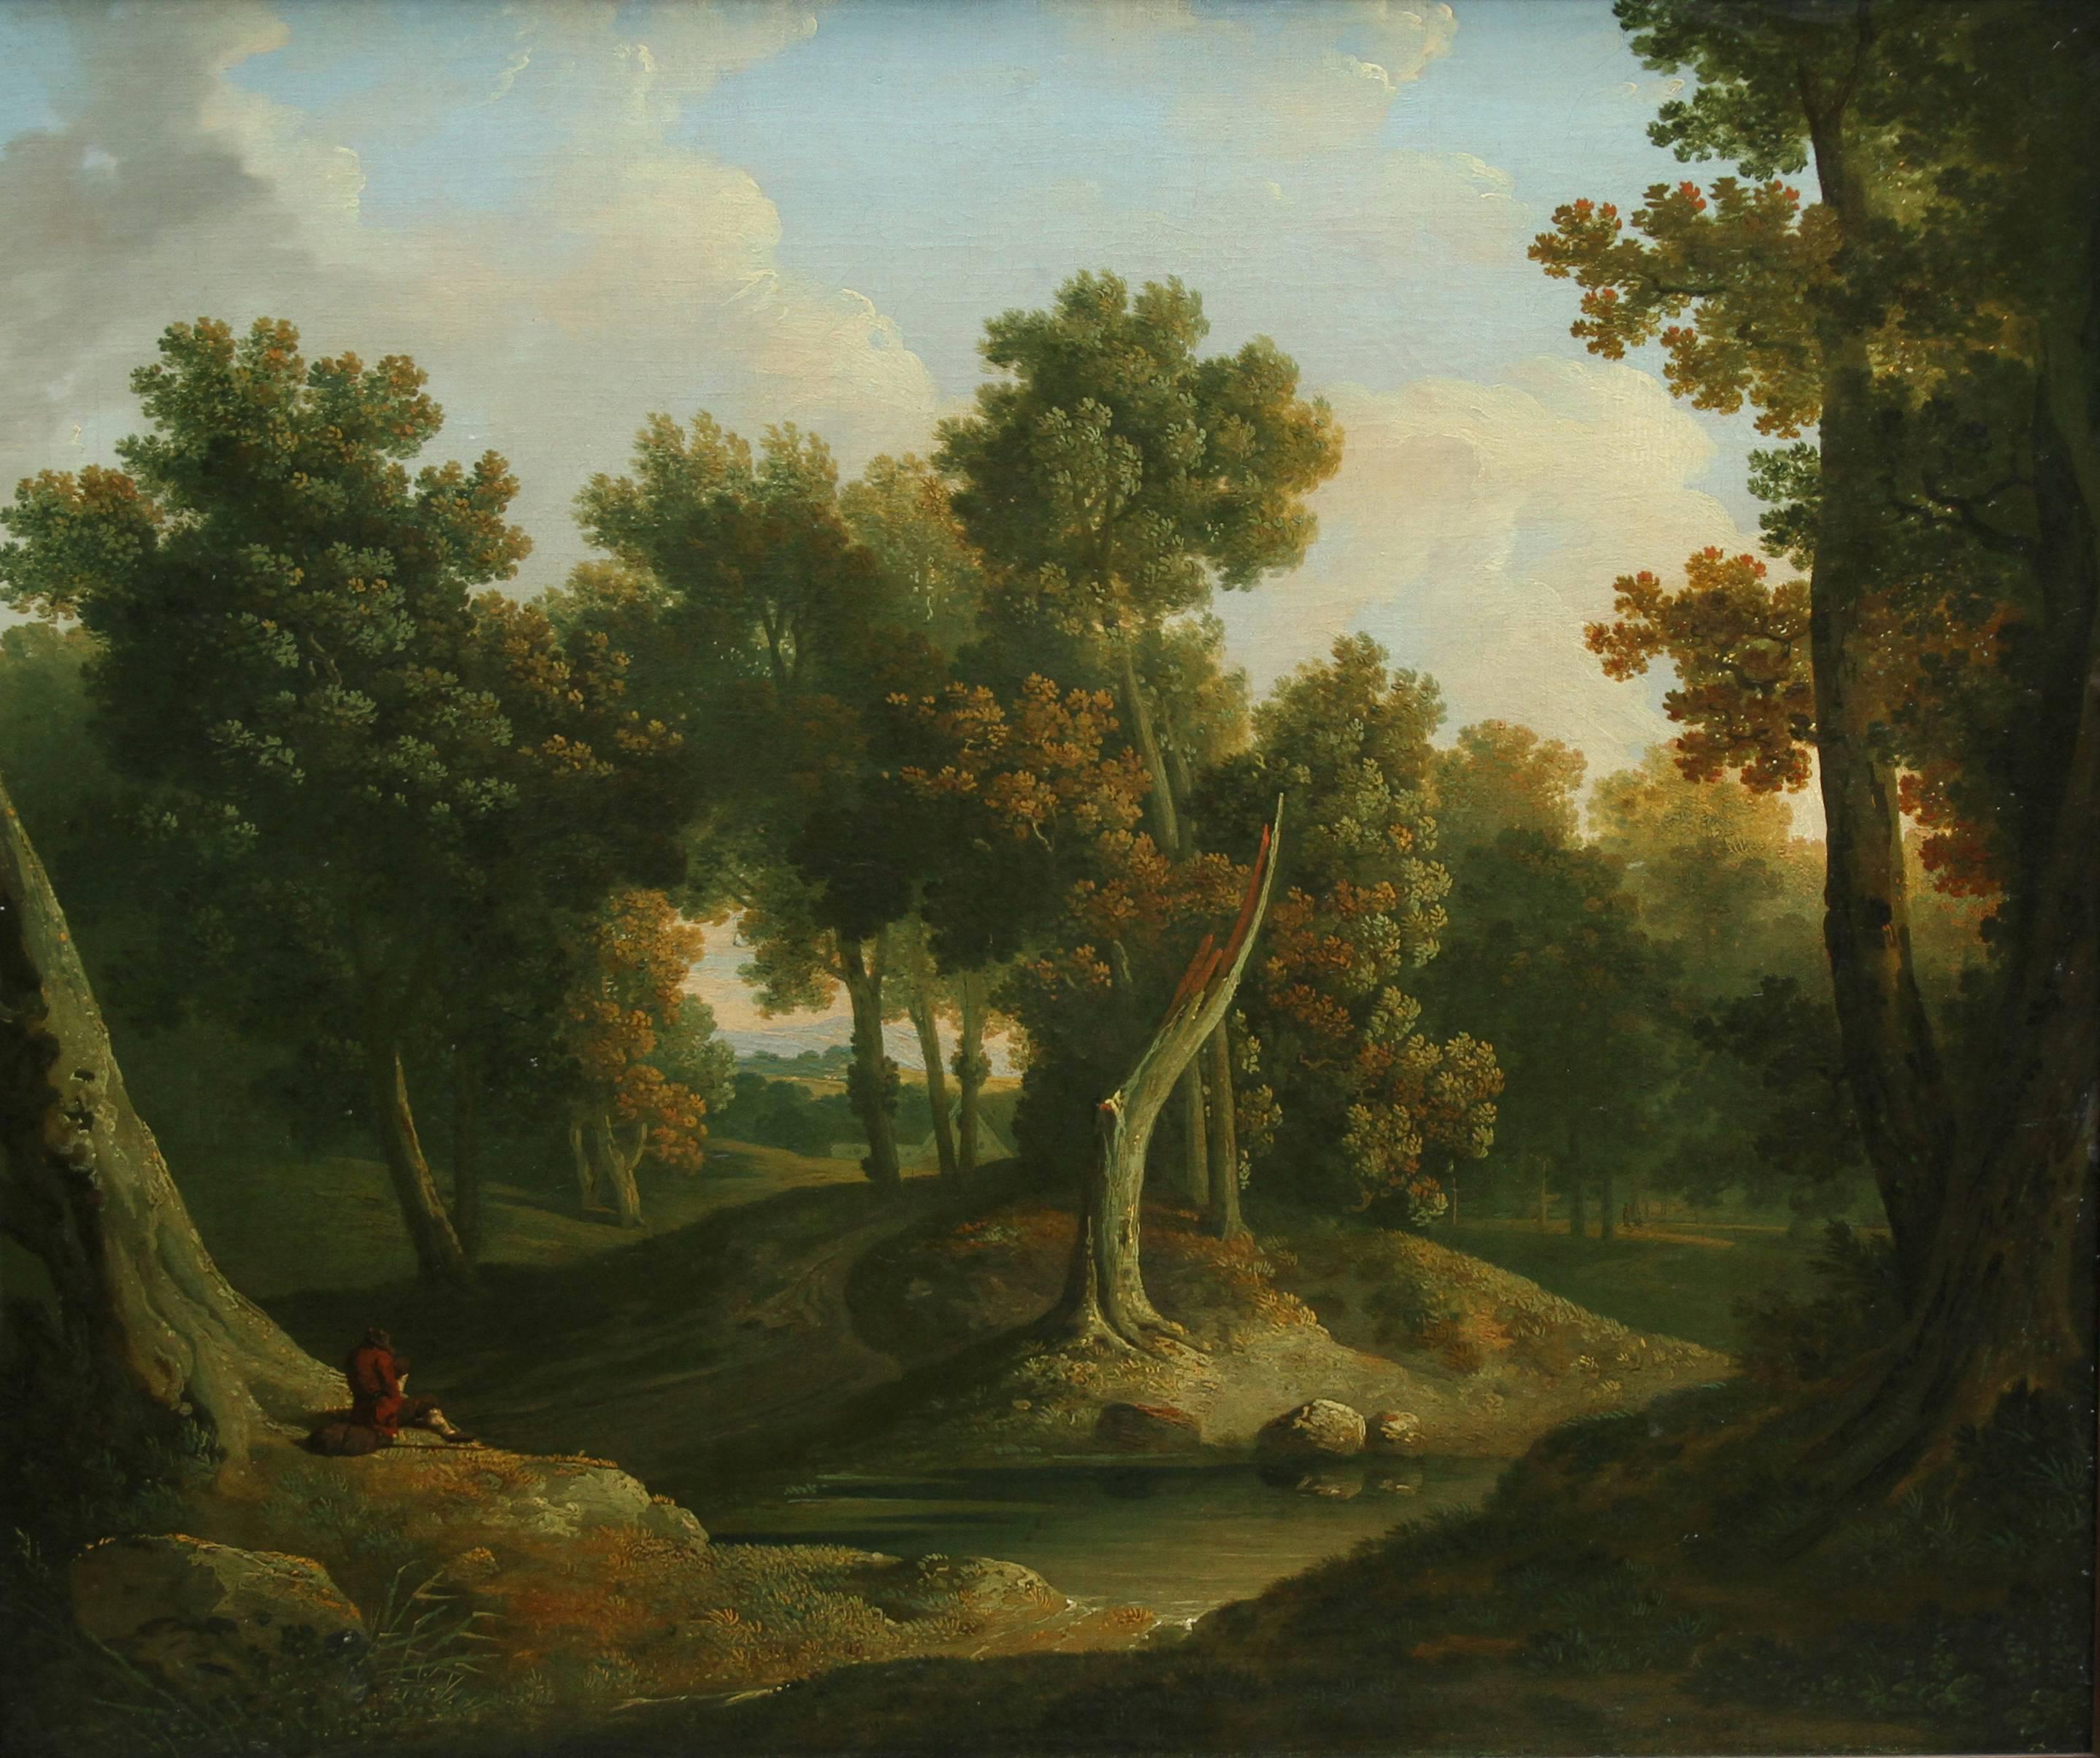 Paisaje arbolado del Viejo Maestro - Pintura al óleo irlandesa de 1830 sobre el arte del bosque  - Painting de James Arthur O'Connor